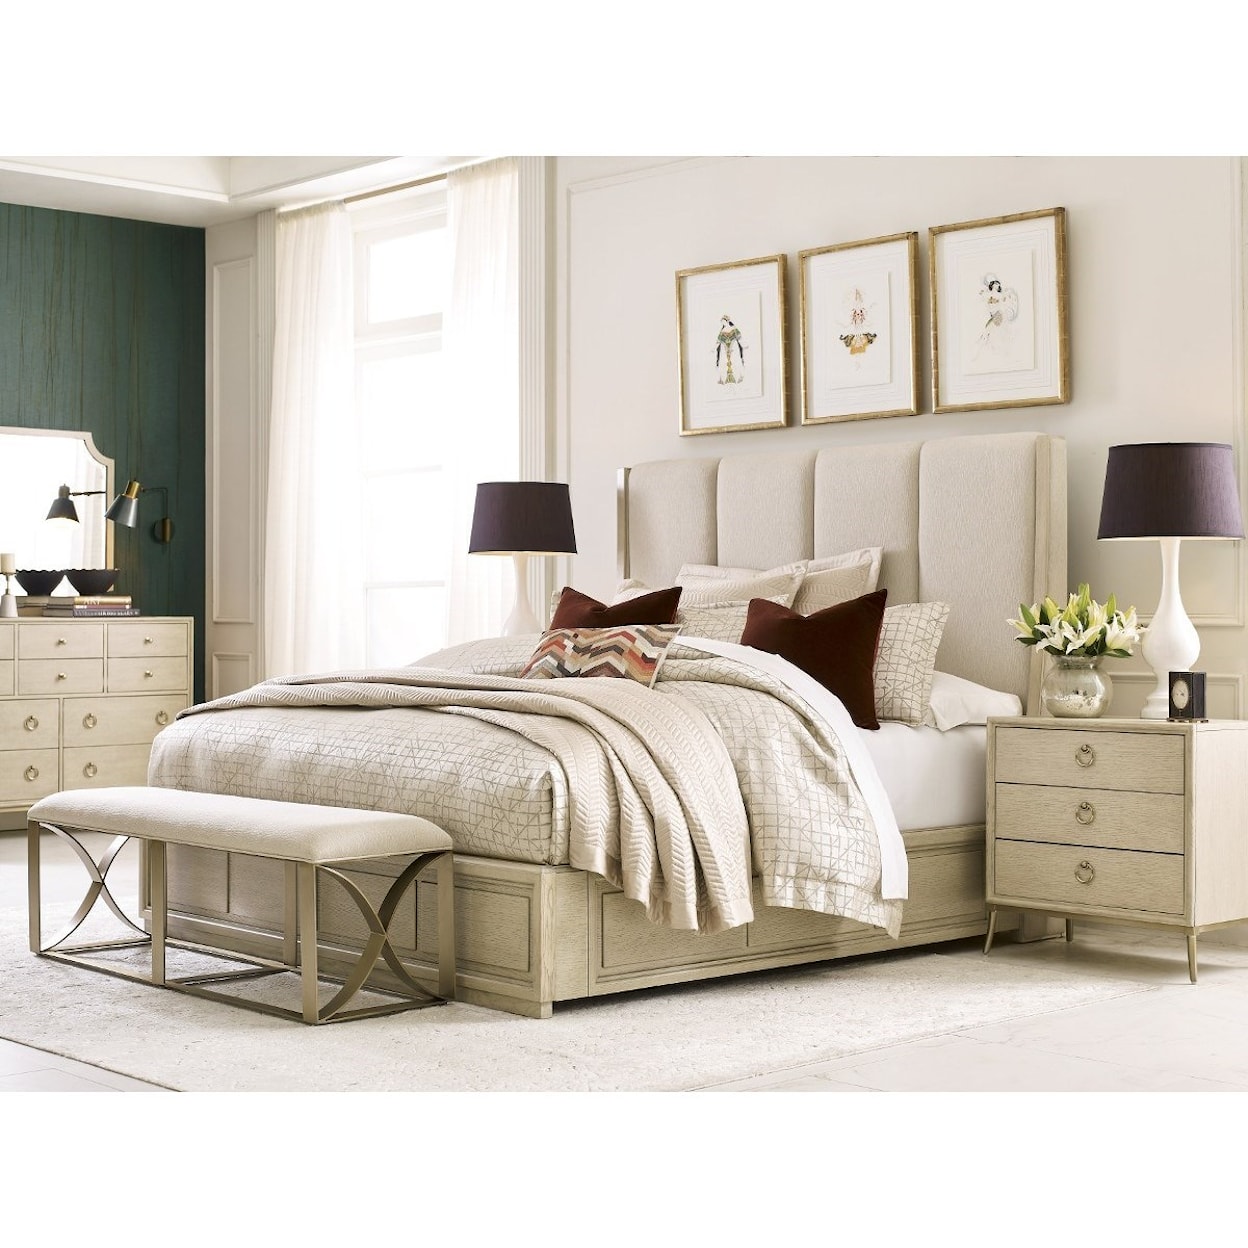 American Drew Lenox Queen Upholstered Bed